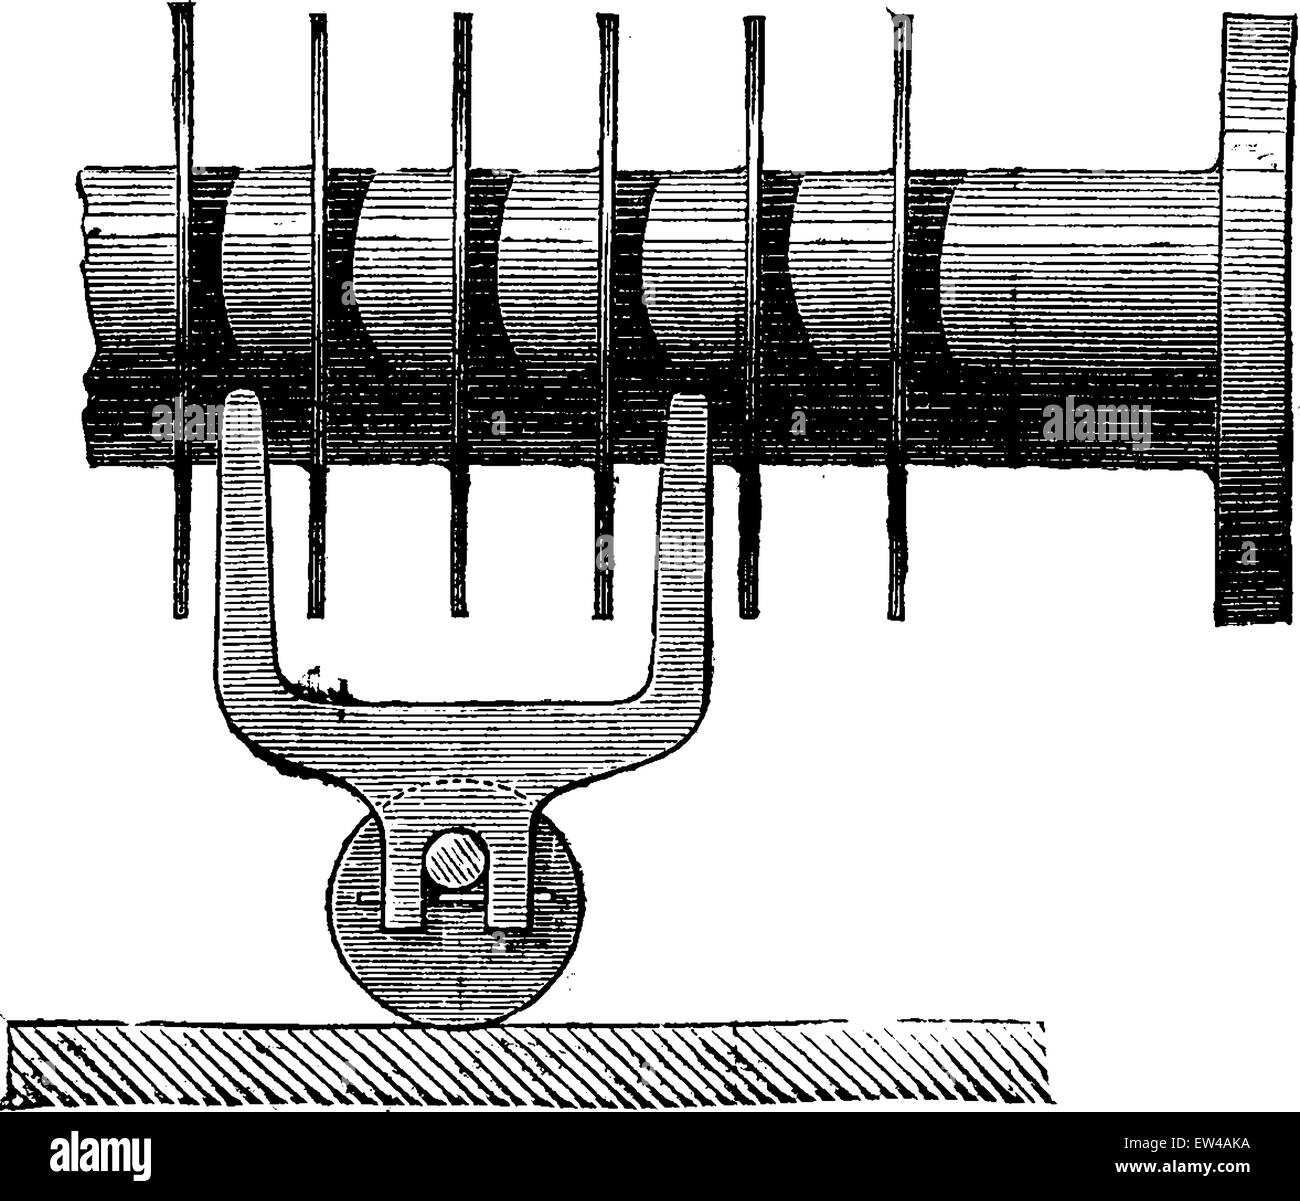 Mobile Rollenlager Dampfrohr auf dem Boden oder in Mulden, Vintage eingravierten Abbildung. Industrielle Enzyklopädie E.-O. Lami - 1875. Stock Vektor